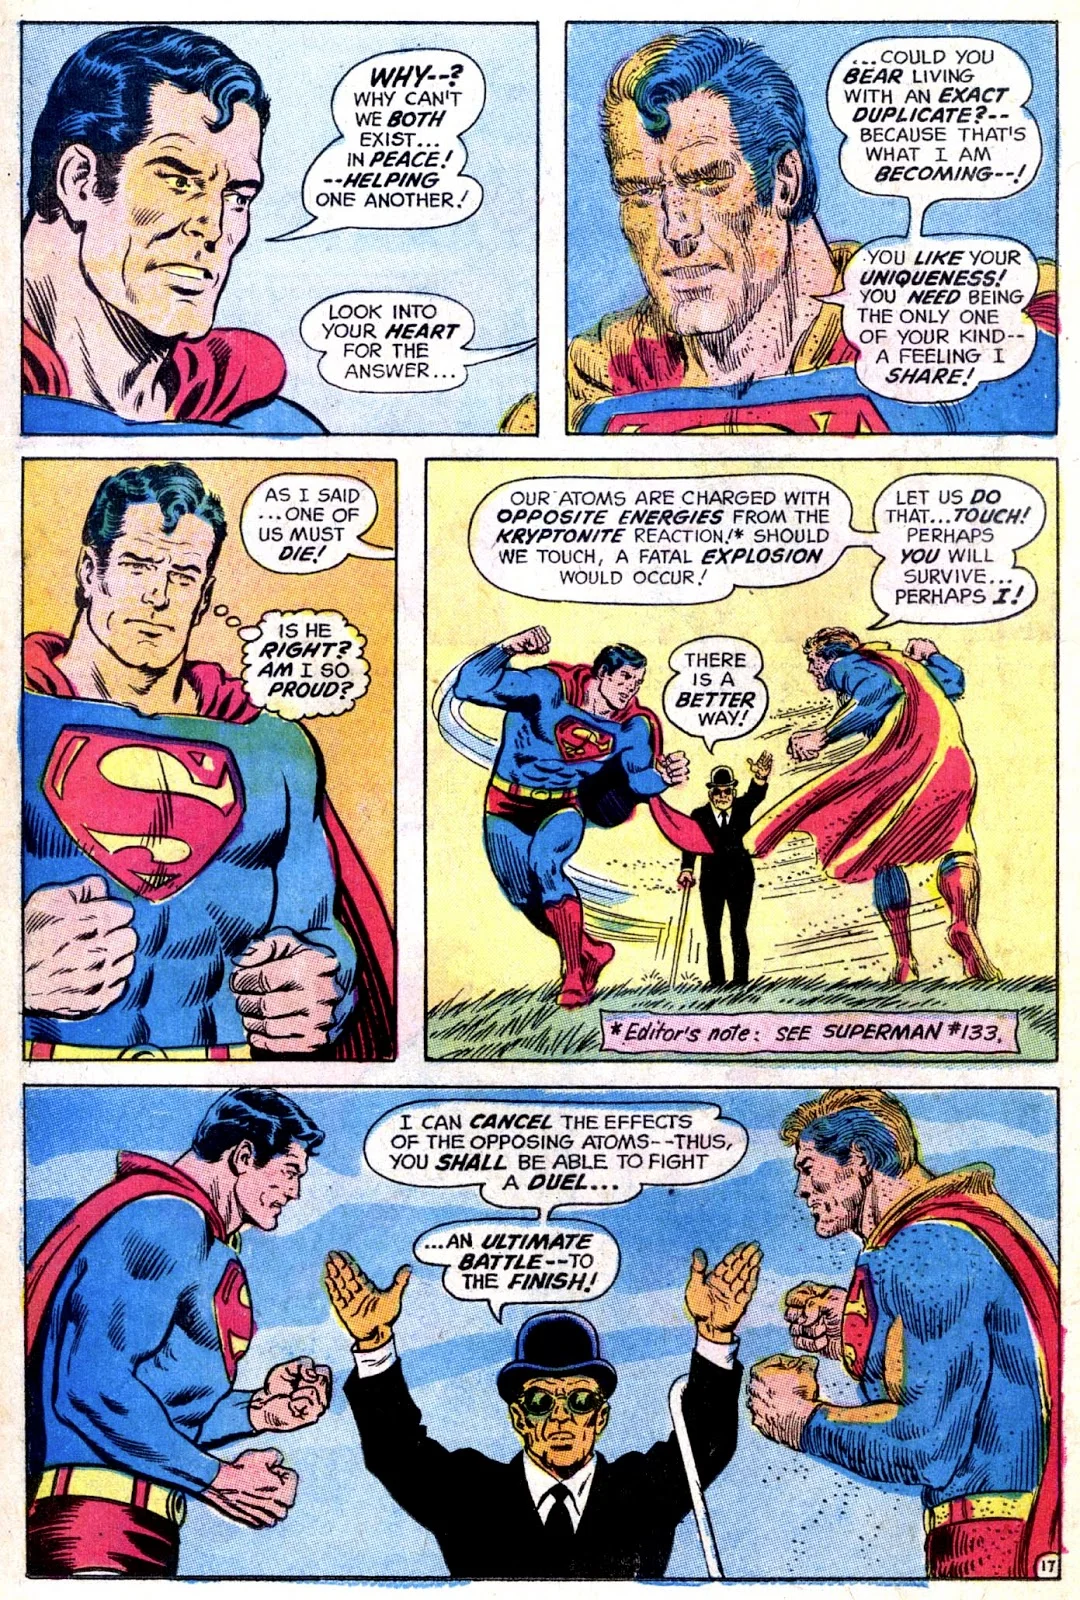 История Супермена и эволюция его образа в комиксах - фото 24